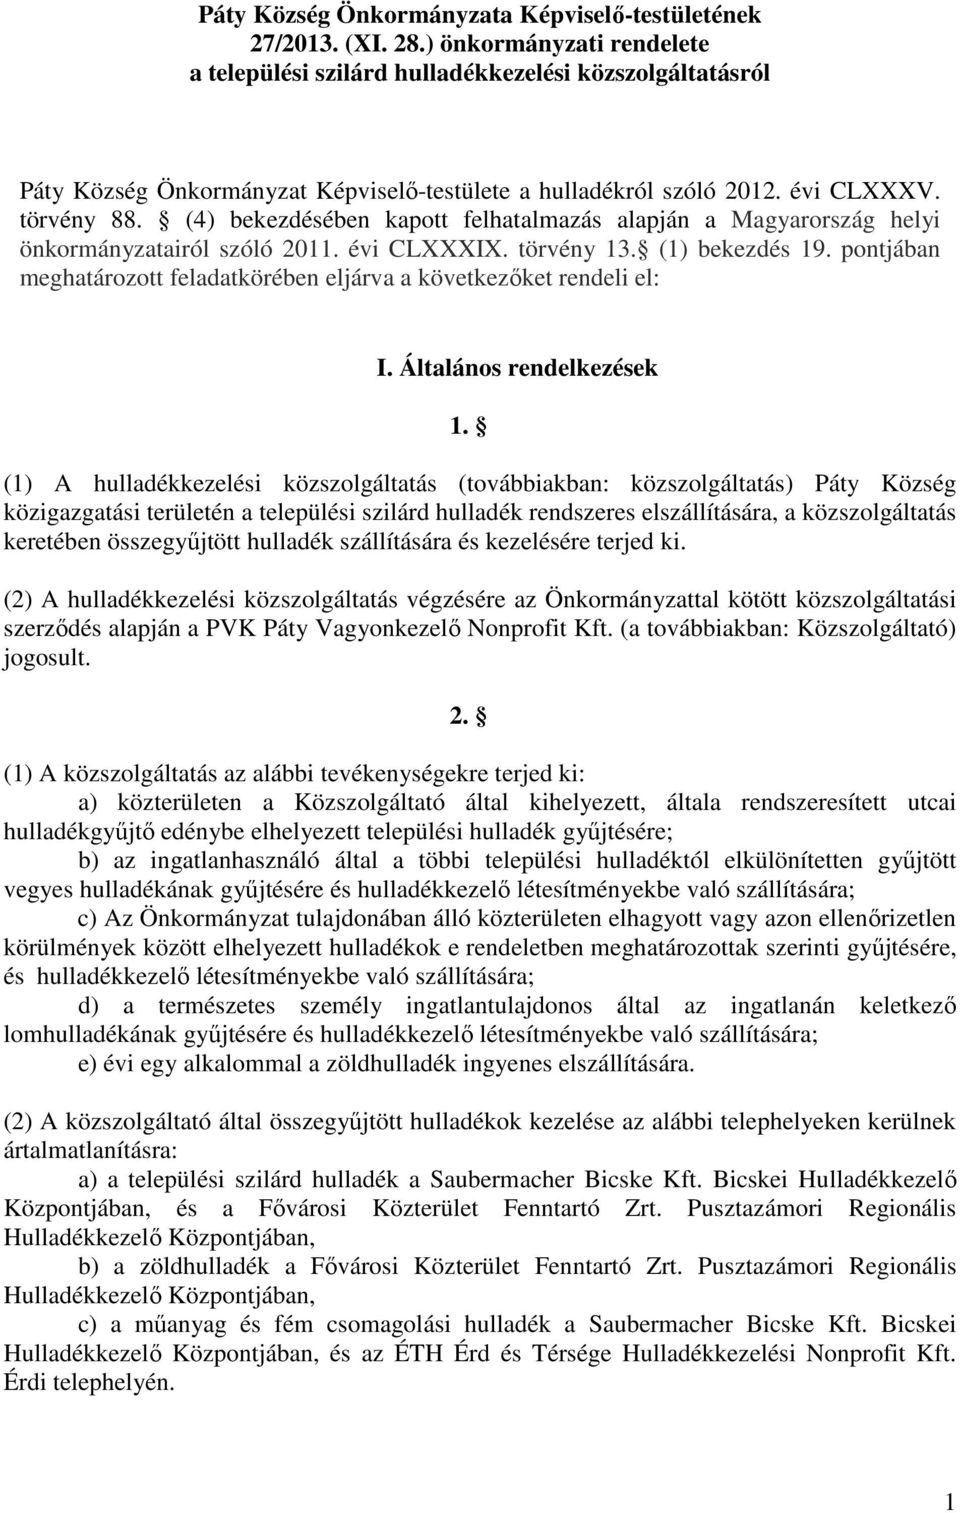 (4) bekezdésében kapott felhatalmazás alapján a Magyarország helyi önkormányzatairól szóló 2011. évi CLXXXIX. törvény 13. (1) bekezdés 19.